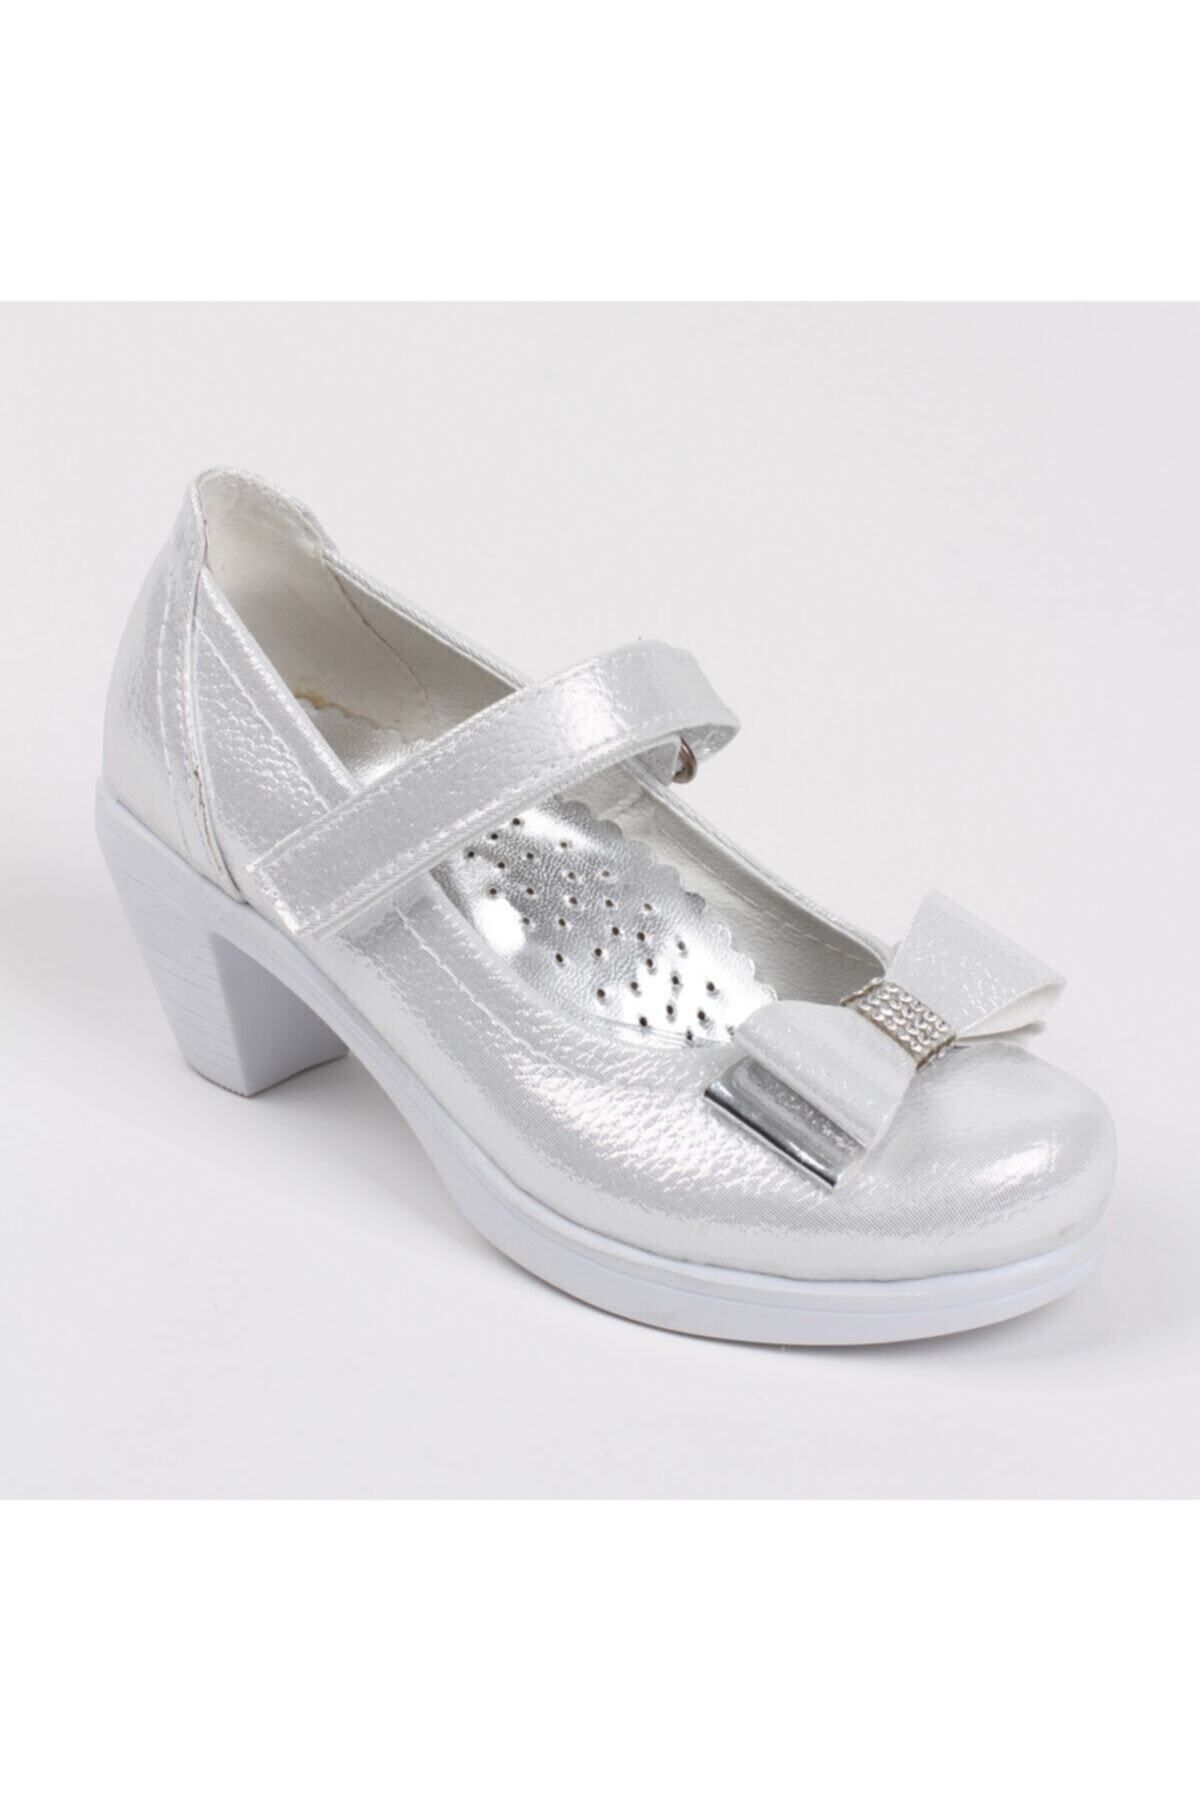 Sare Çocuk Giyim Beyaz Kız Çocuk Tokalı Topuklu Ayakkabı Abiye Ayakkabısı